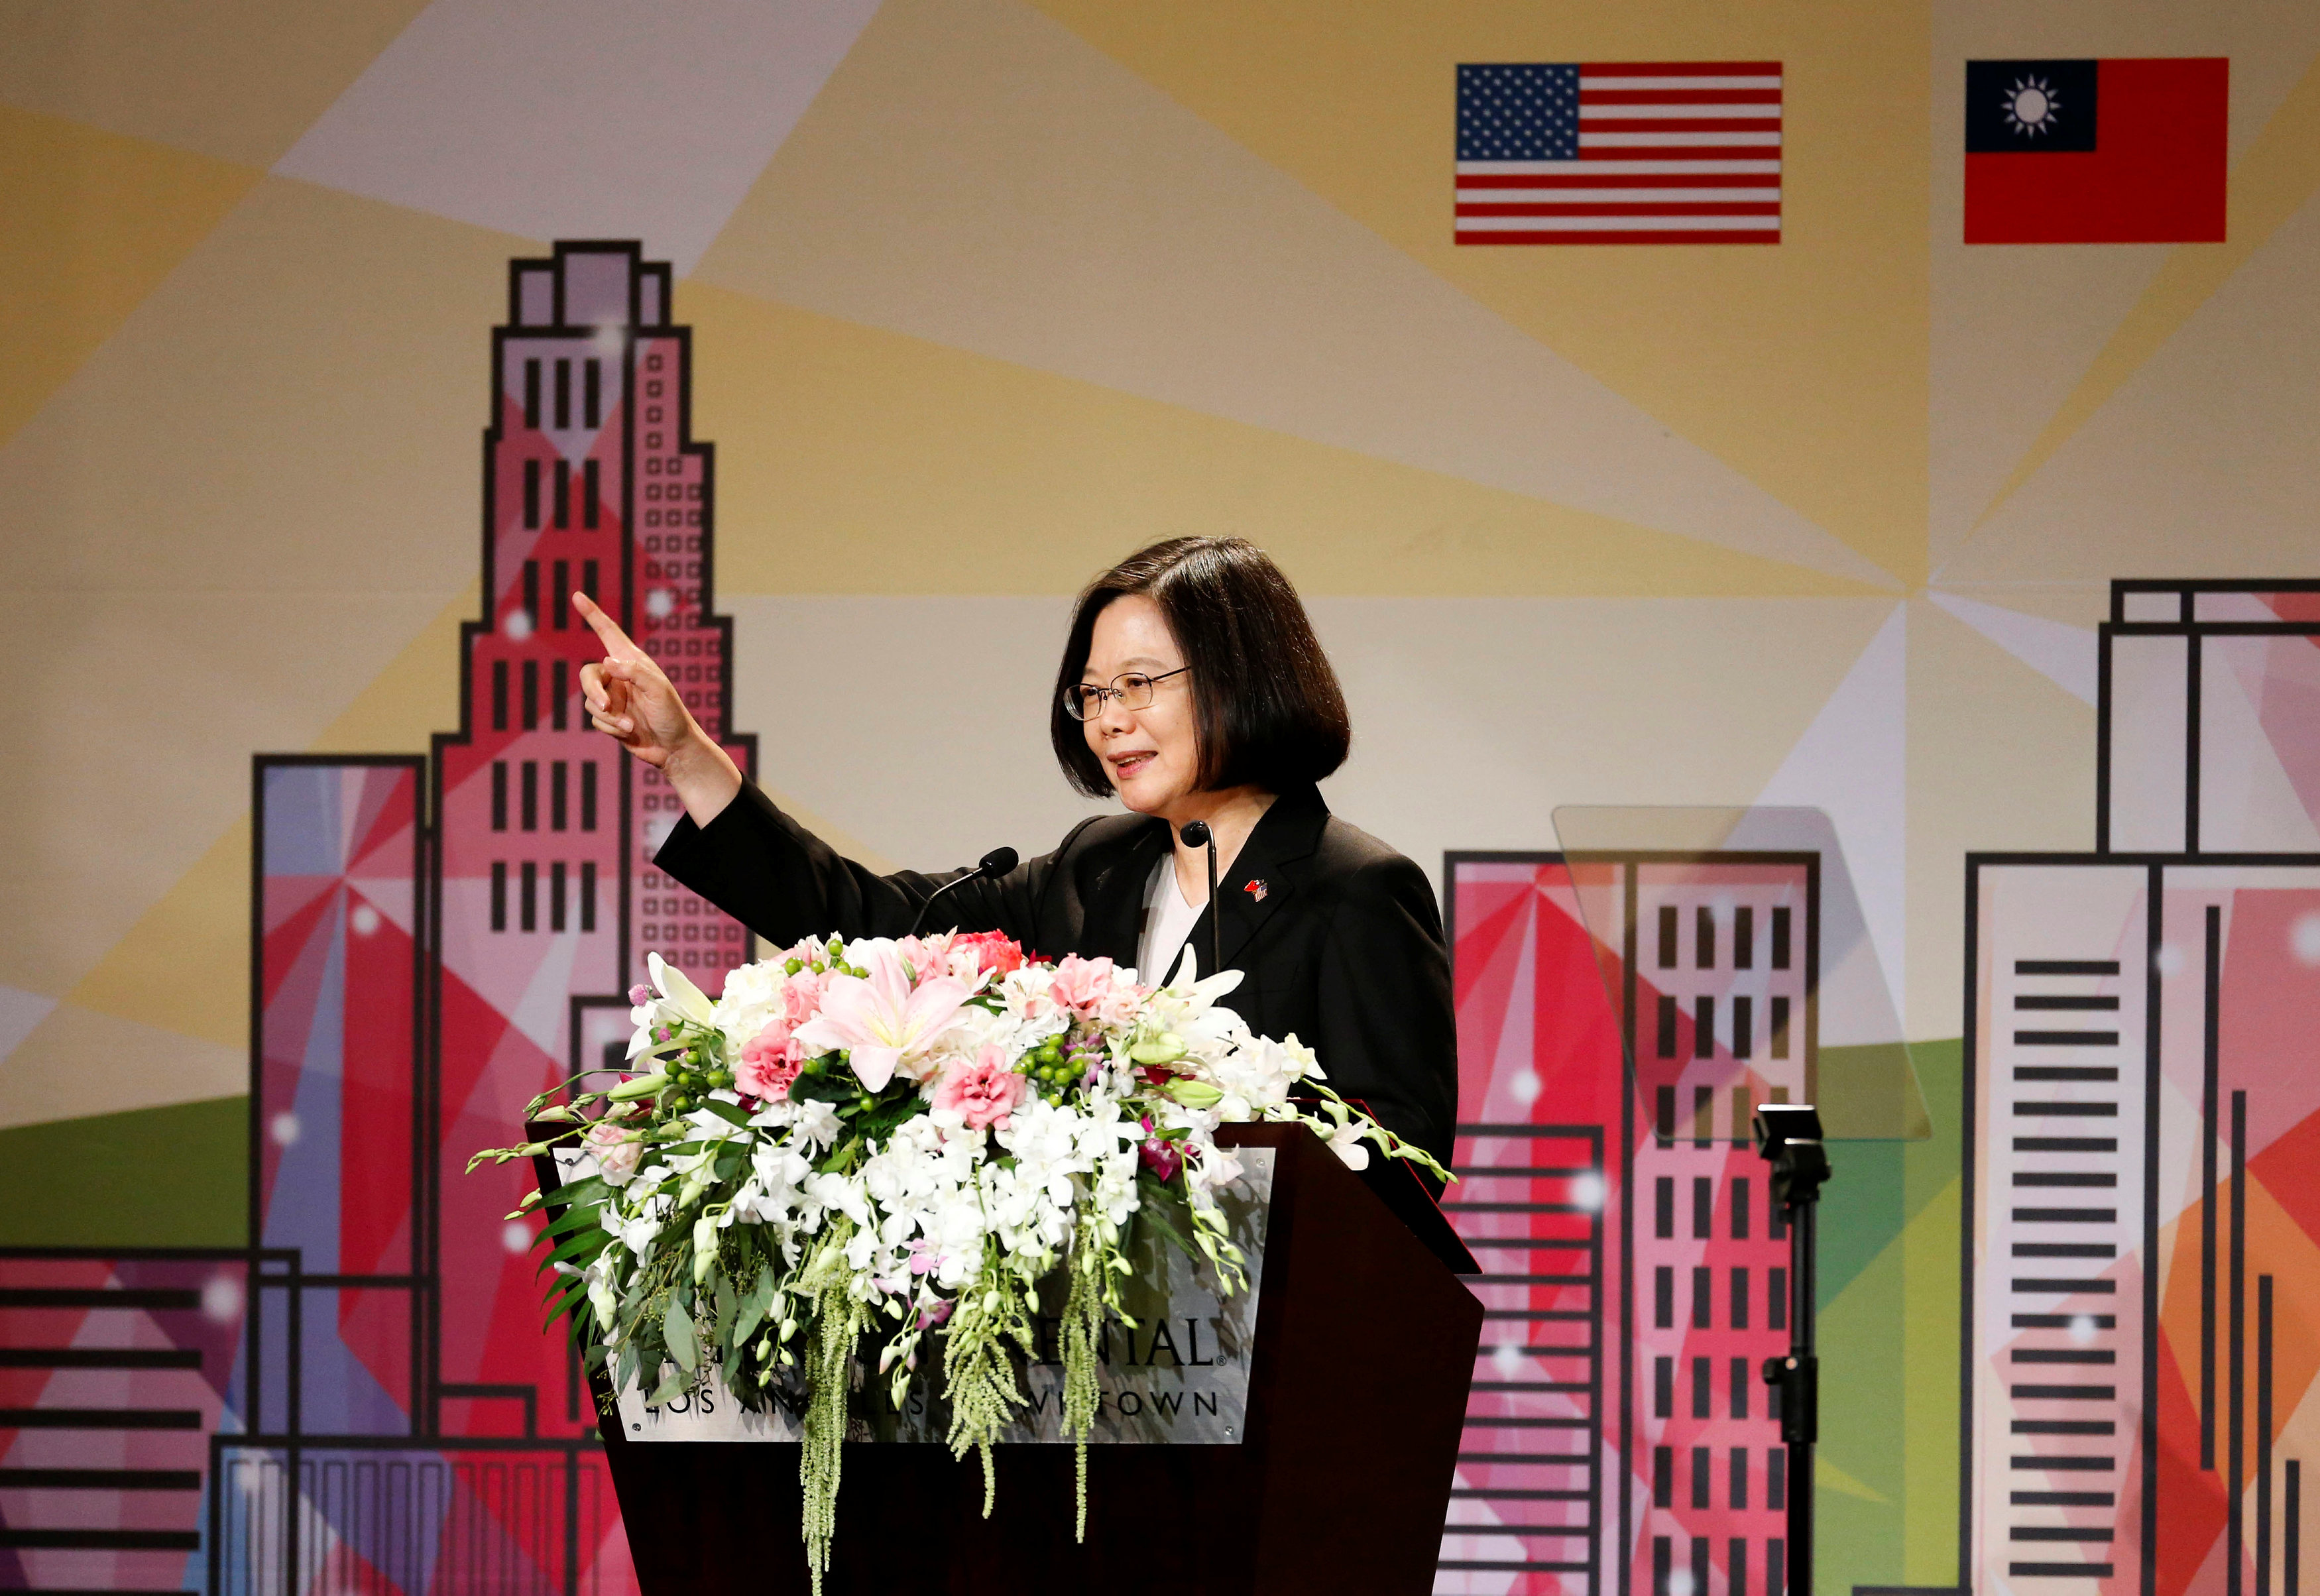 زيارة رئيسة تايوان لأمريكا تتزامن مع الحرب التجارية مع الصين